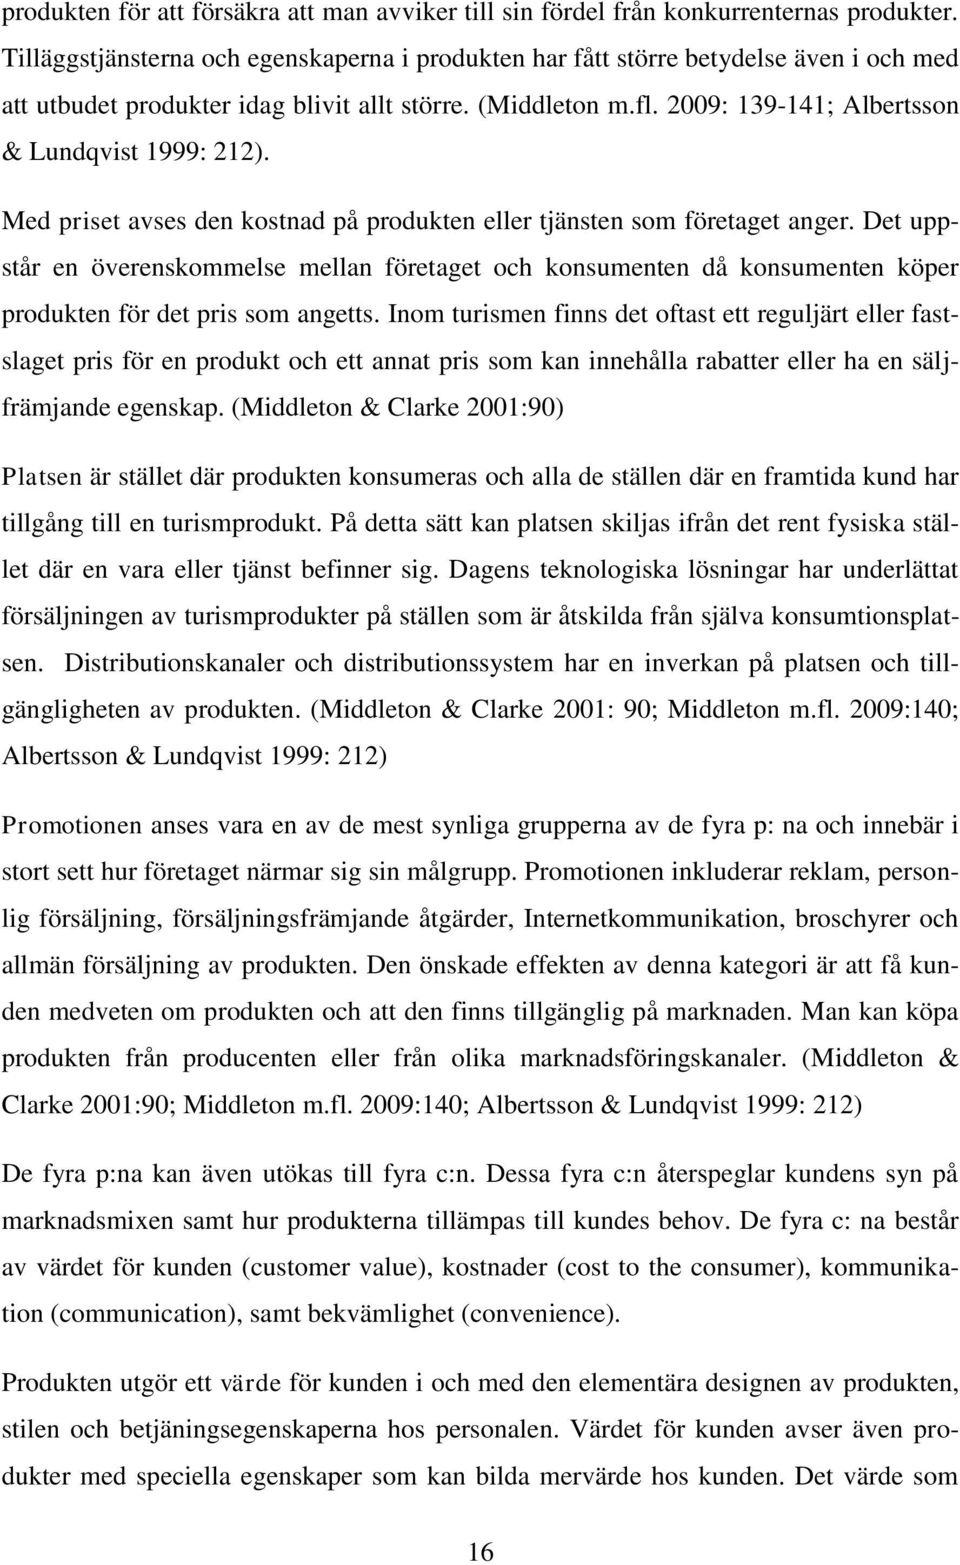 2009: 139-141; Albertsson & Lundqvist 1999: 212). Med priset avses den kostnad på produkten eller tjänsten som företaget anger.